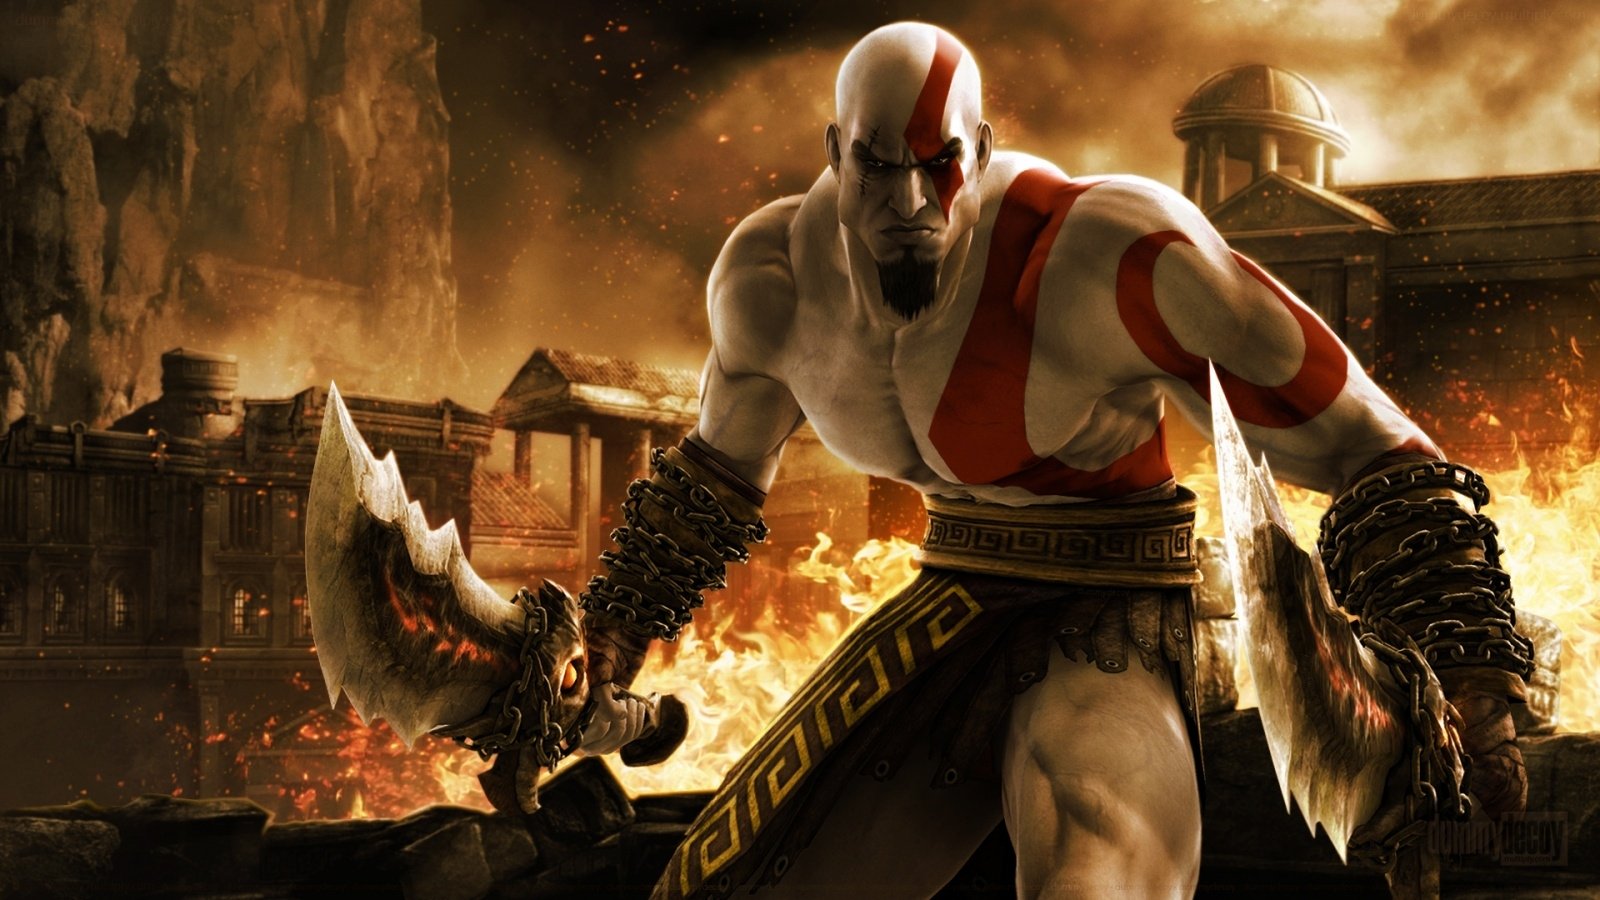 Kratos (God Of War) video game God of War Image